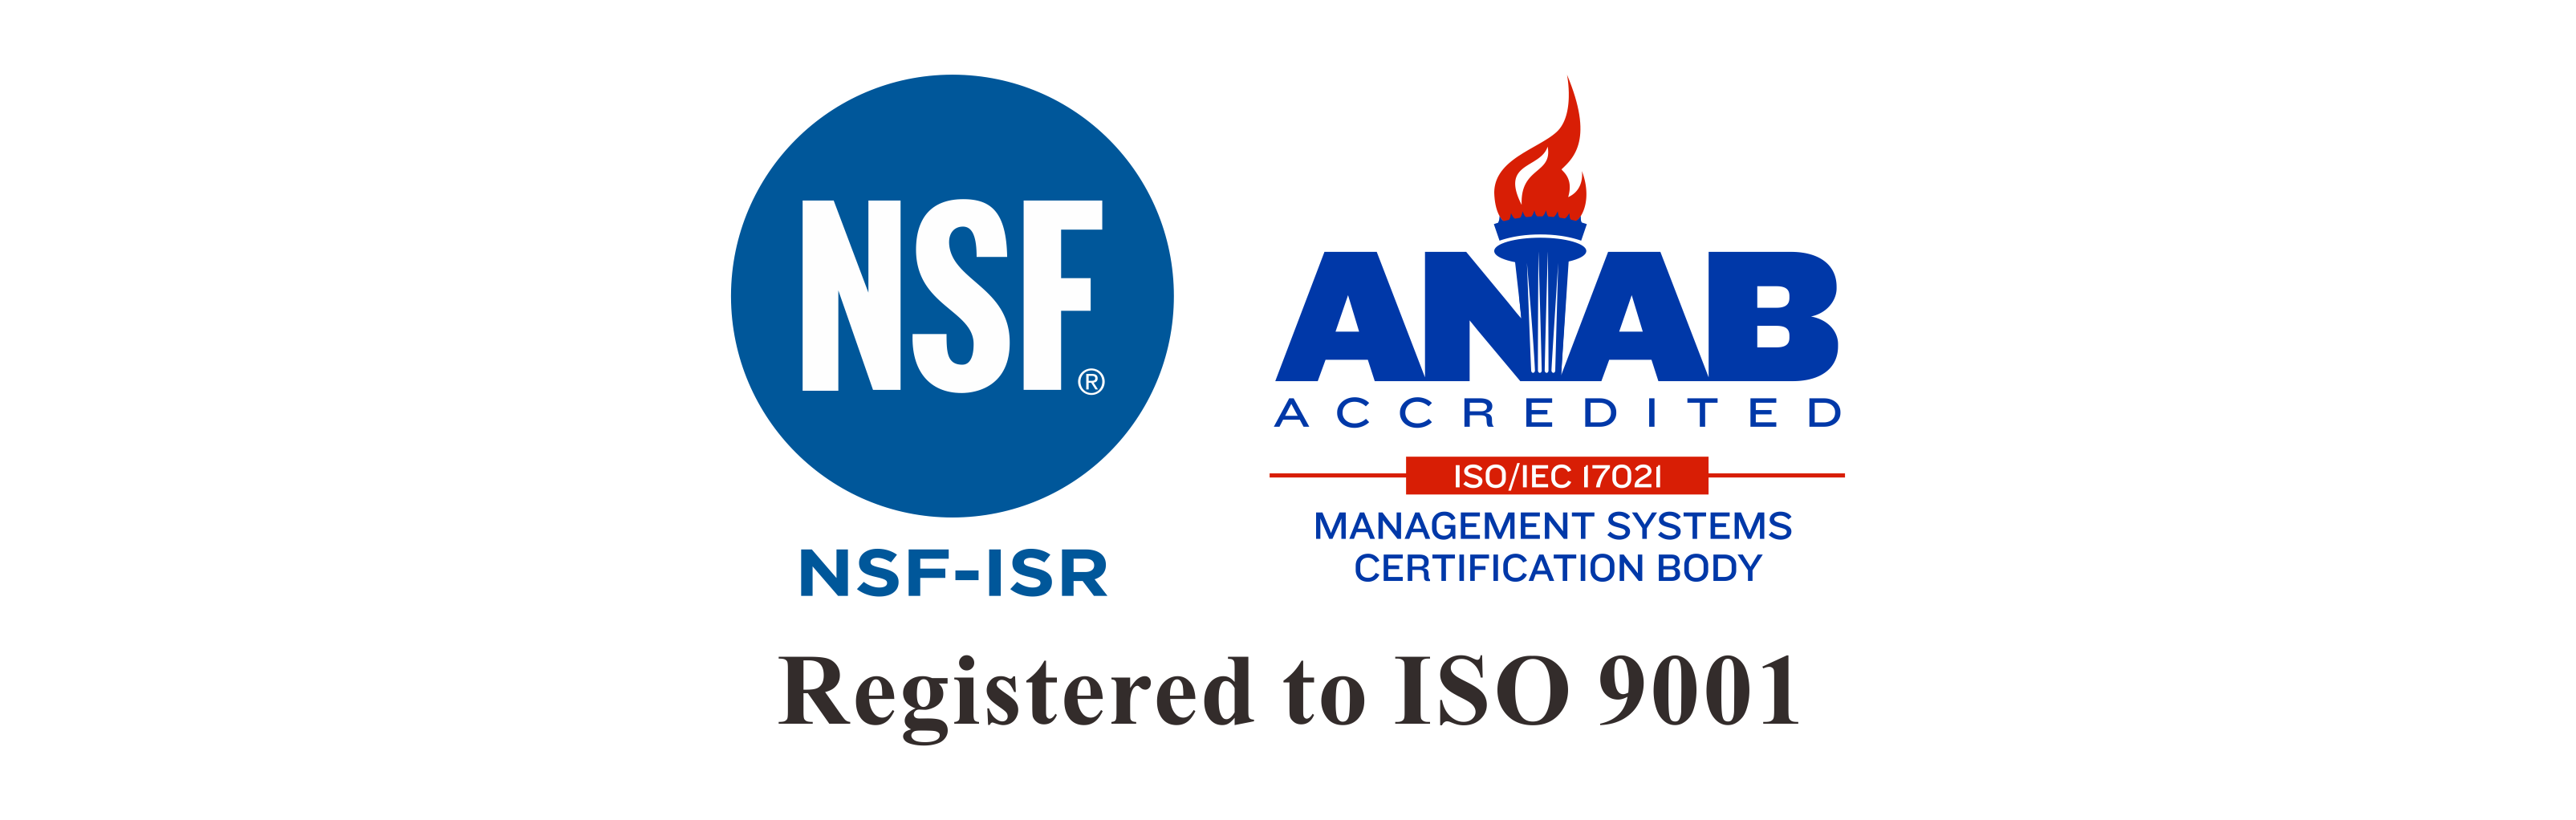 長新科技通過ISO 9001：2015改版審核認證